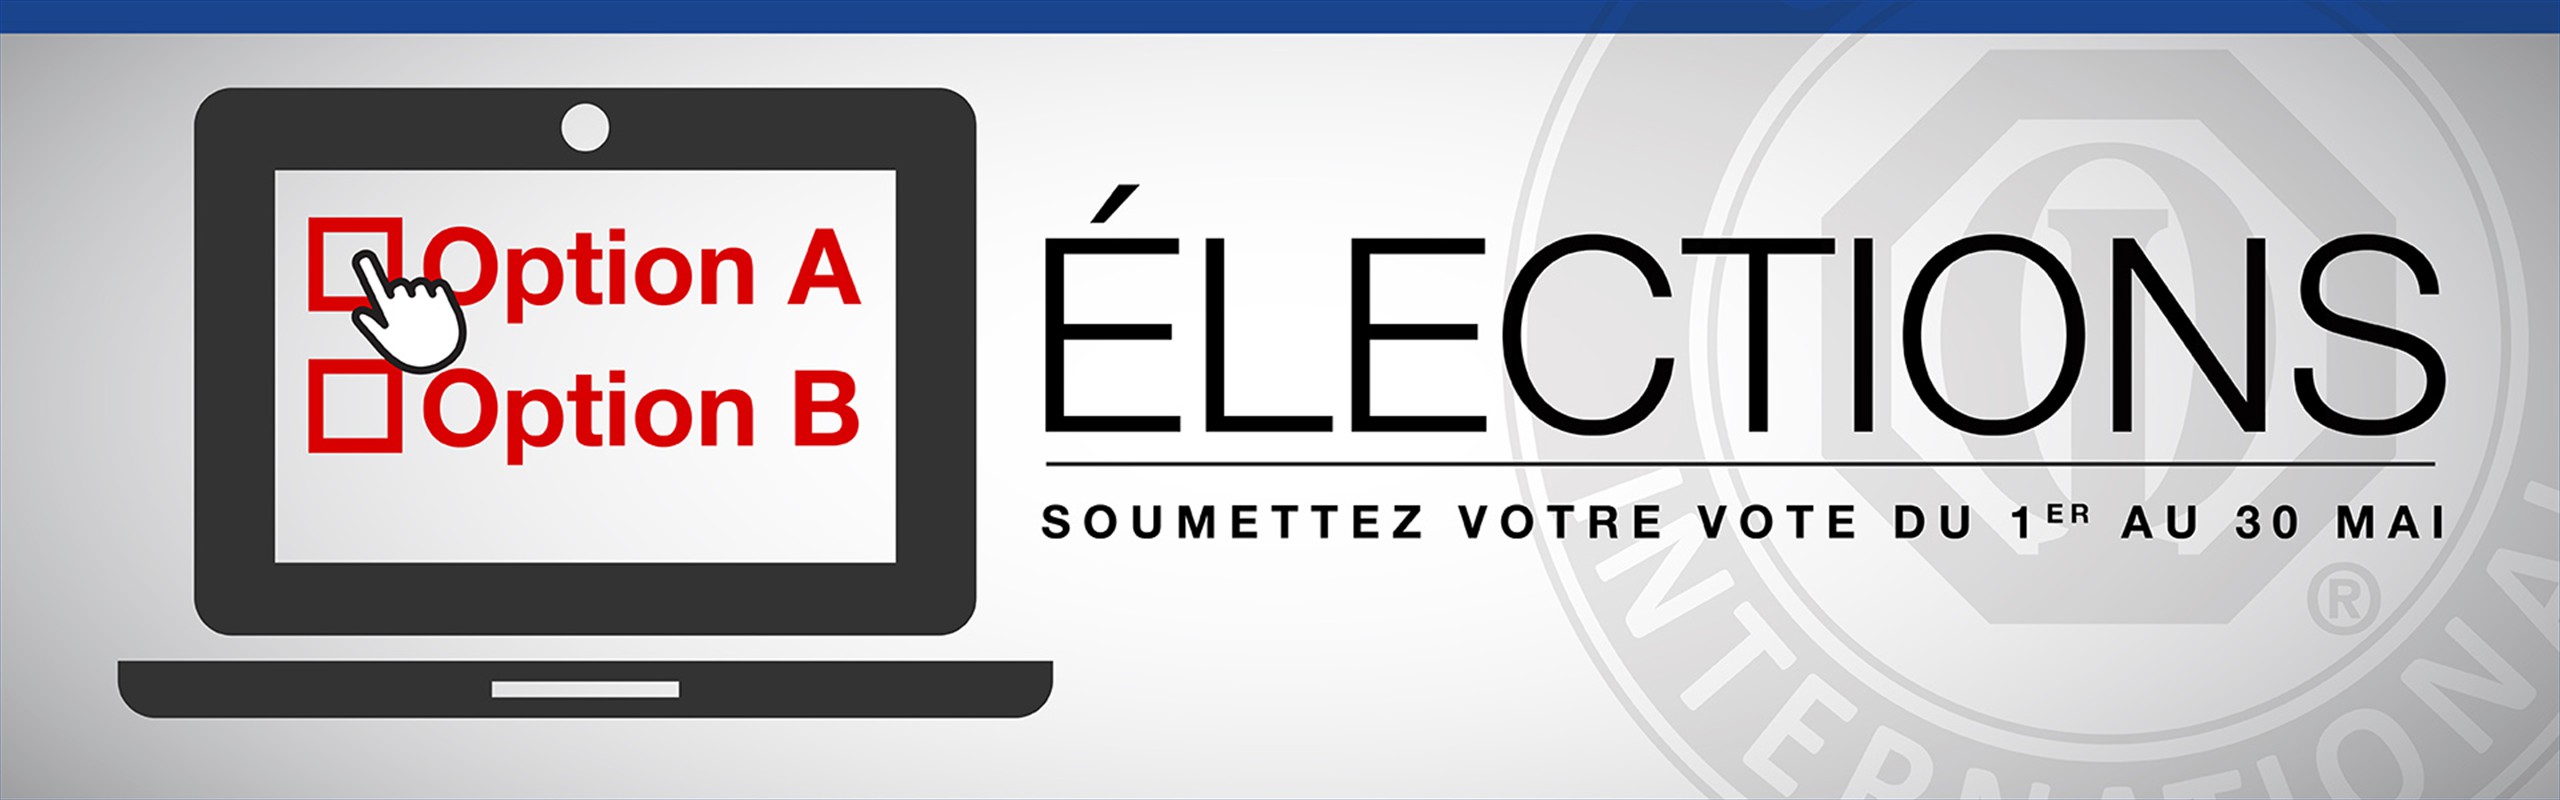 Elections_WebBanner_FR